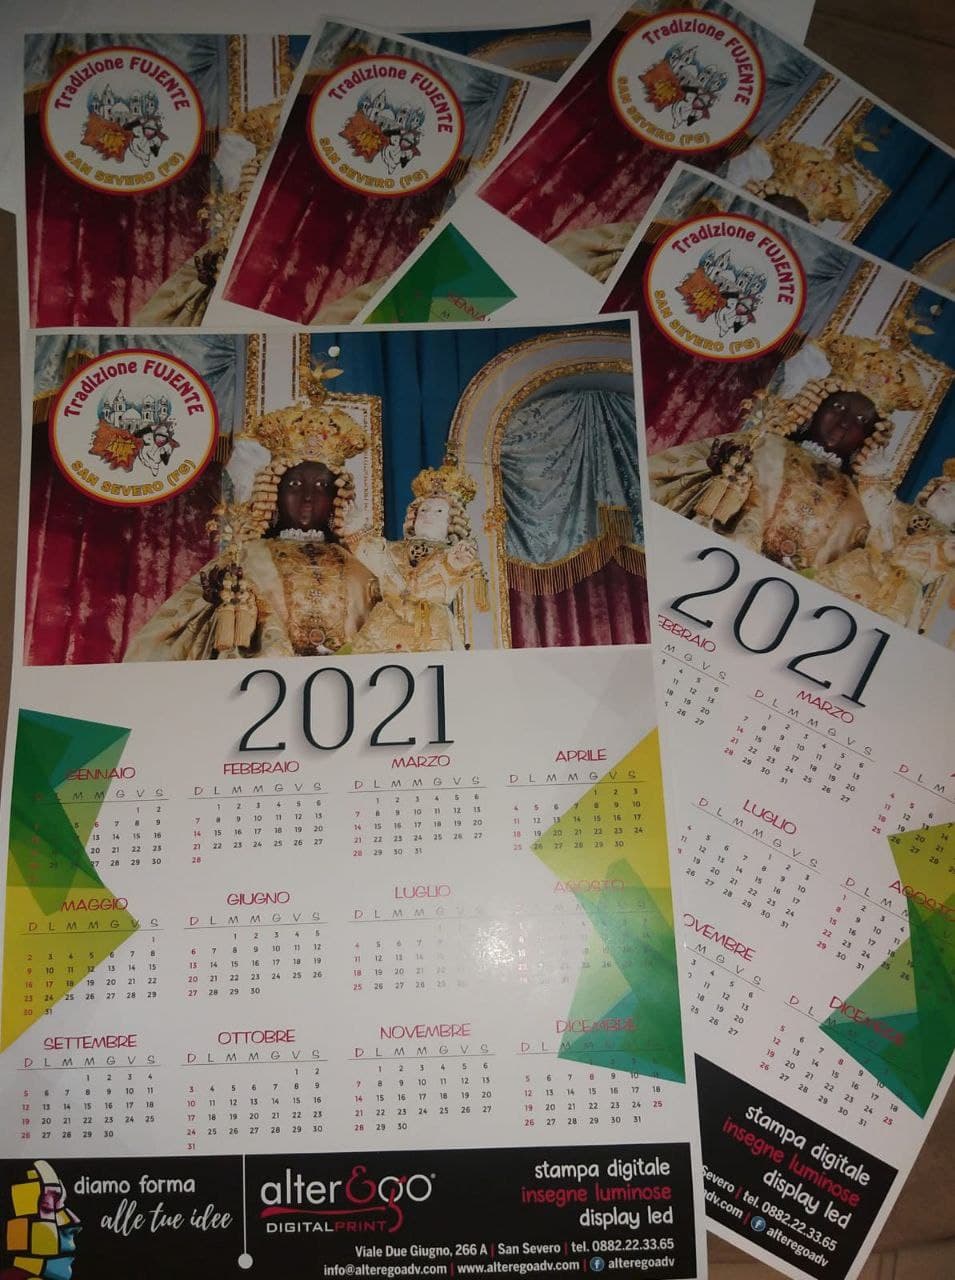 Calendario 2021 dell’Associazione Tradizione Fujente